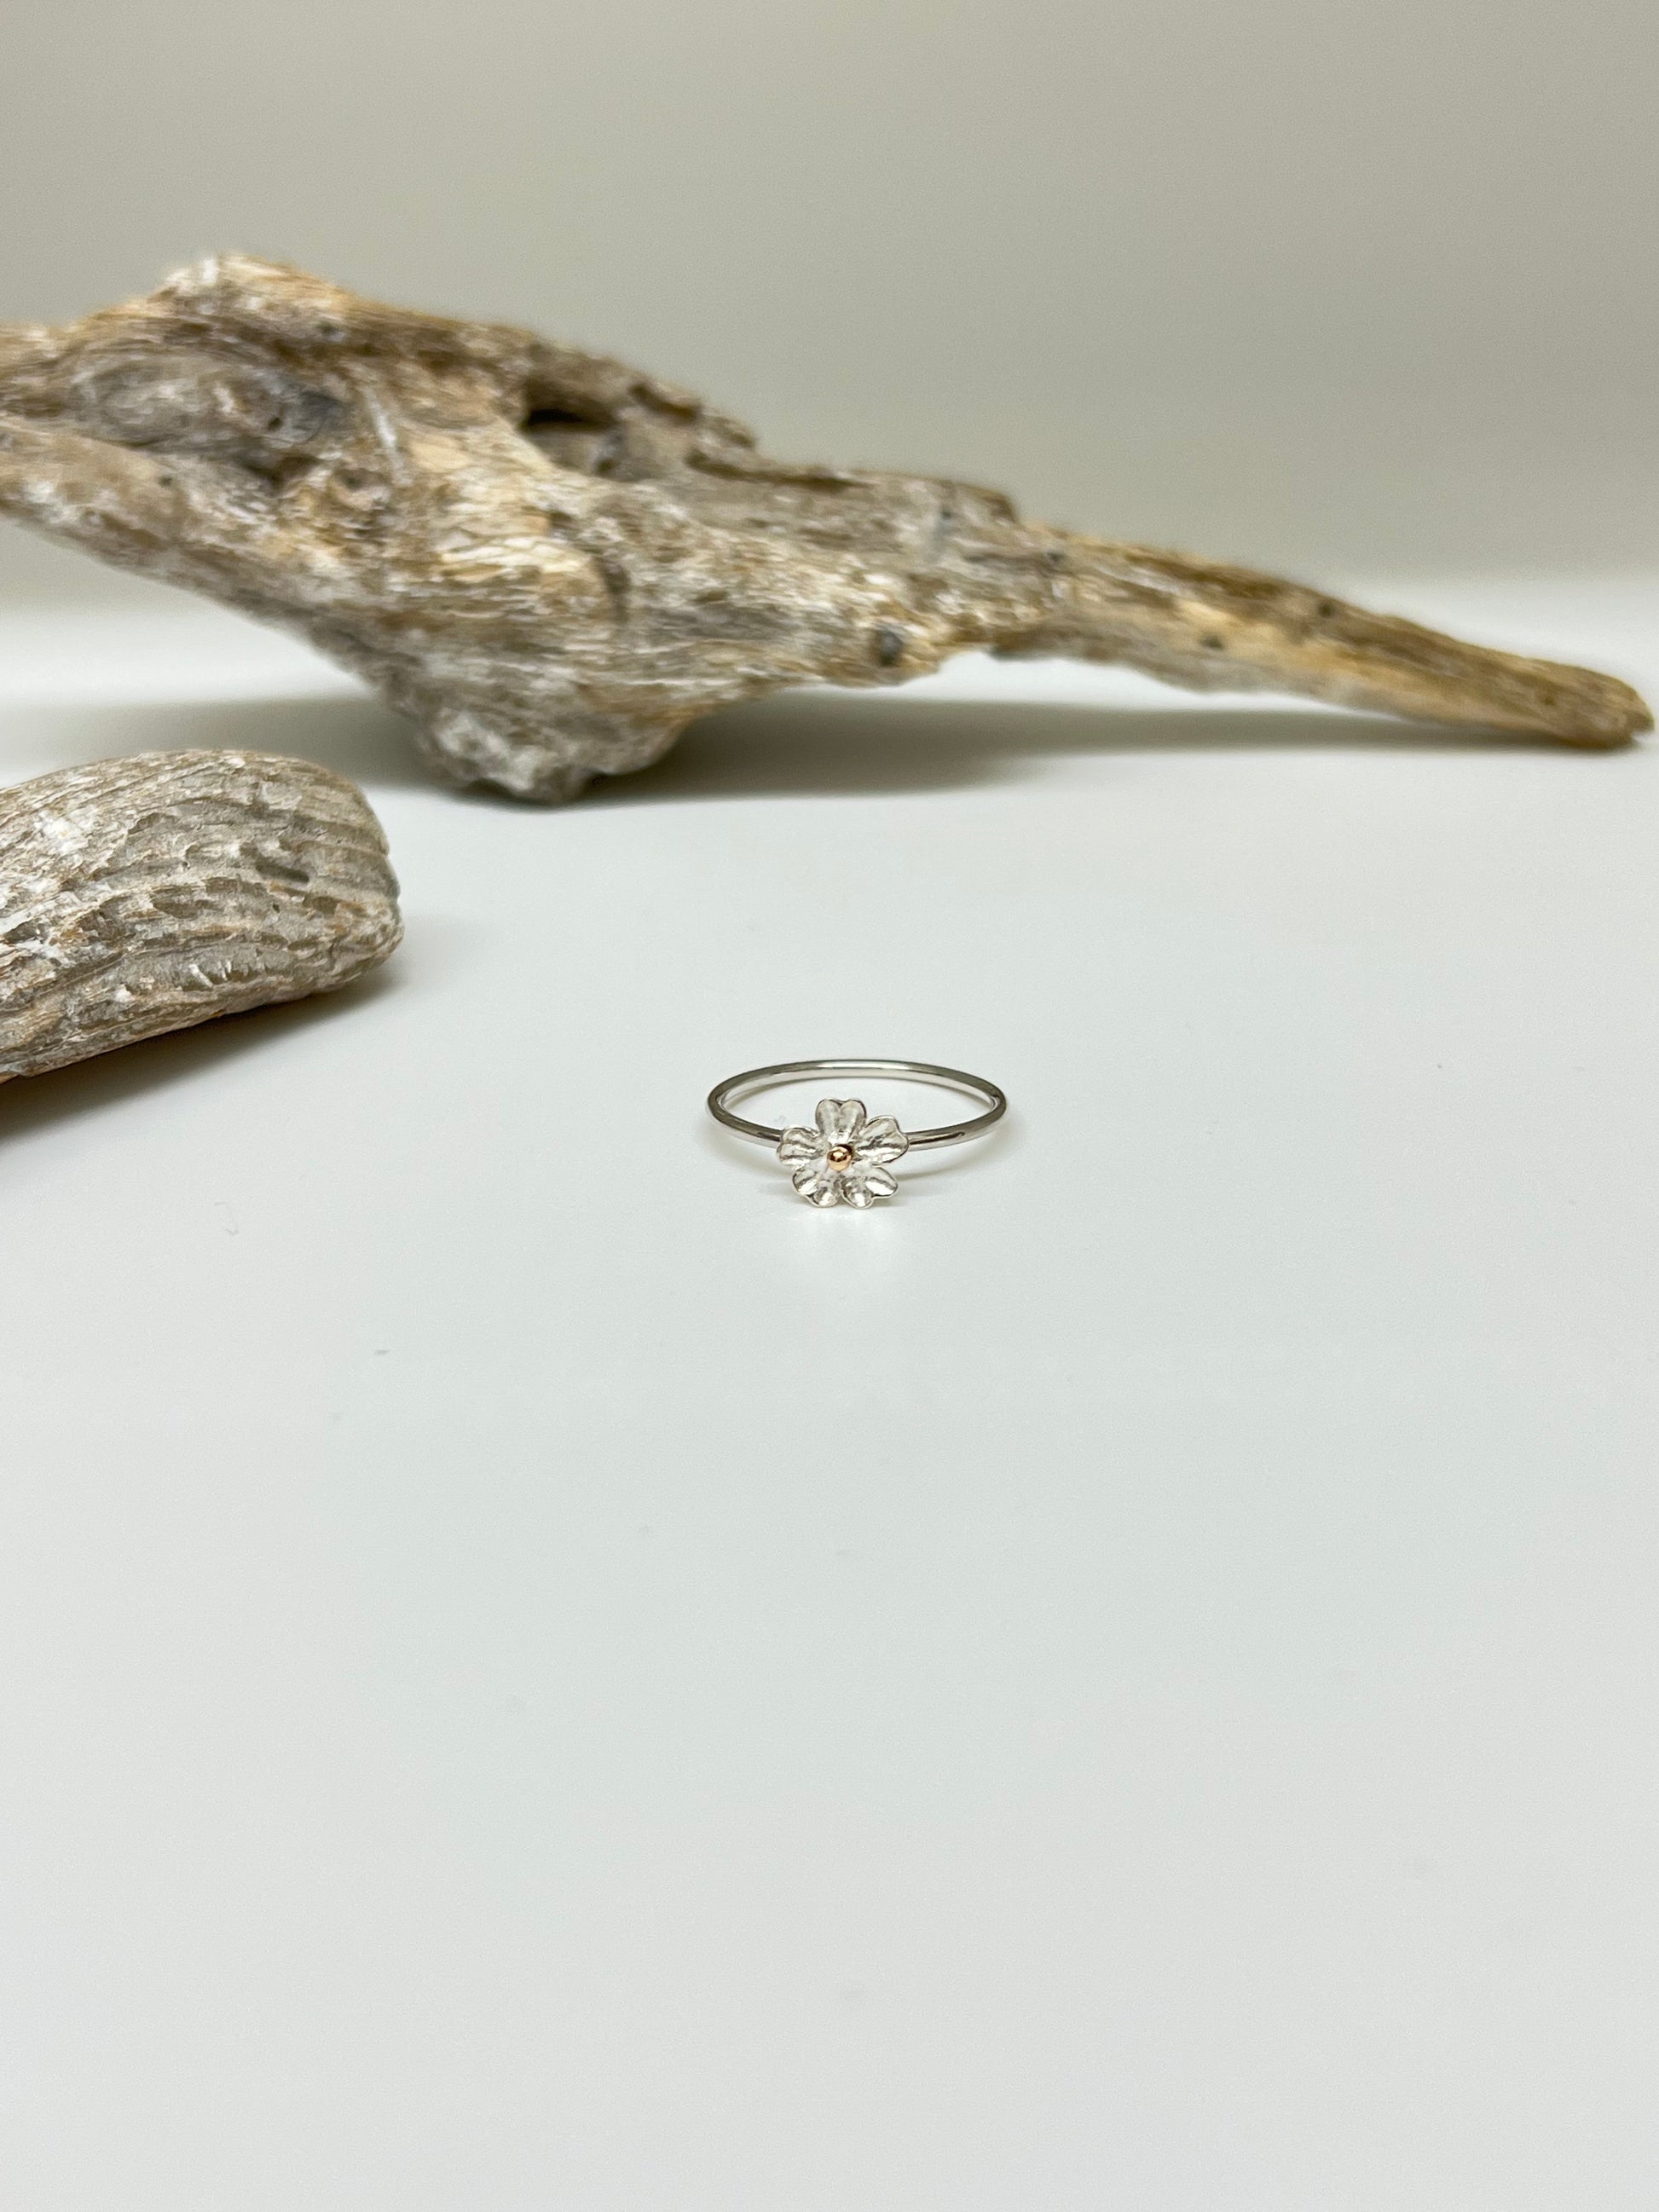 Flower spider ring Argent et Or 14 carats Fait main en Outaouais recyclé grw48925 Outaouais W Jewellery